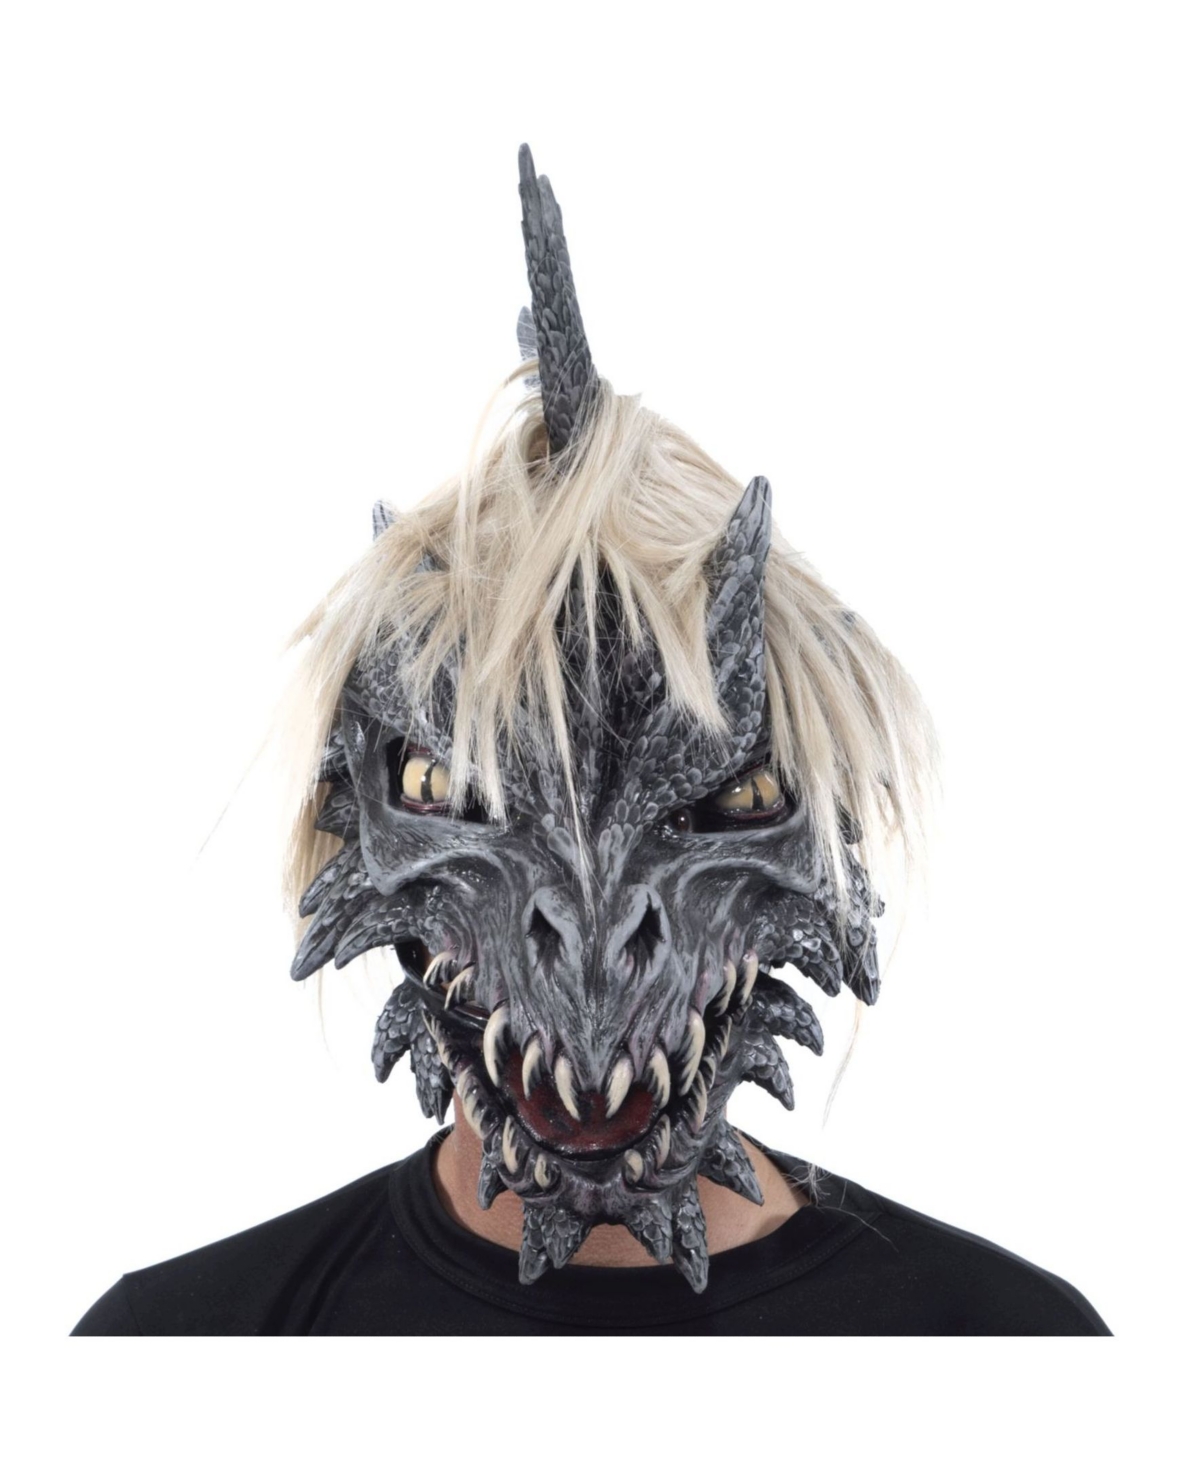 Zagone Studios Zagone Size Studios Monroe The Dragon Latex Adult Costume Mask One Size In Multi